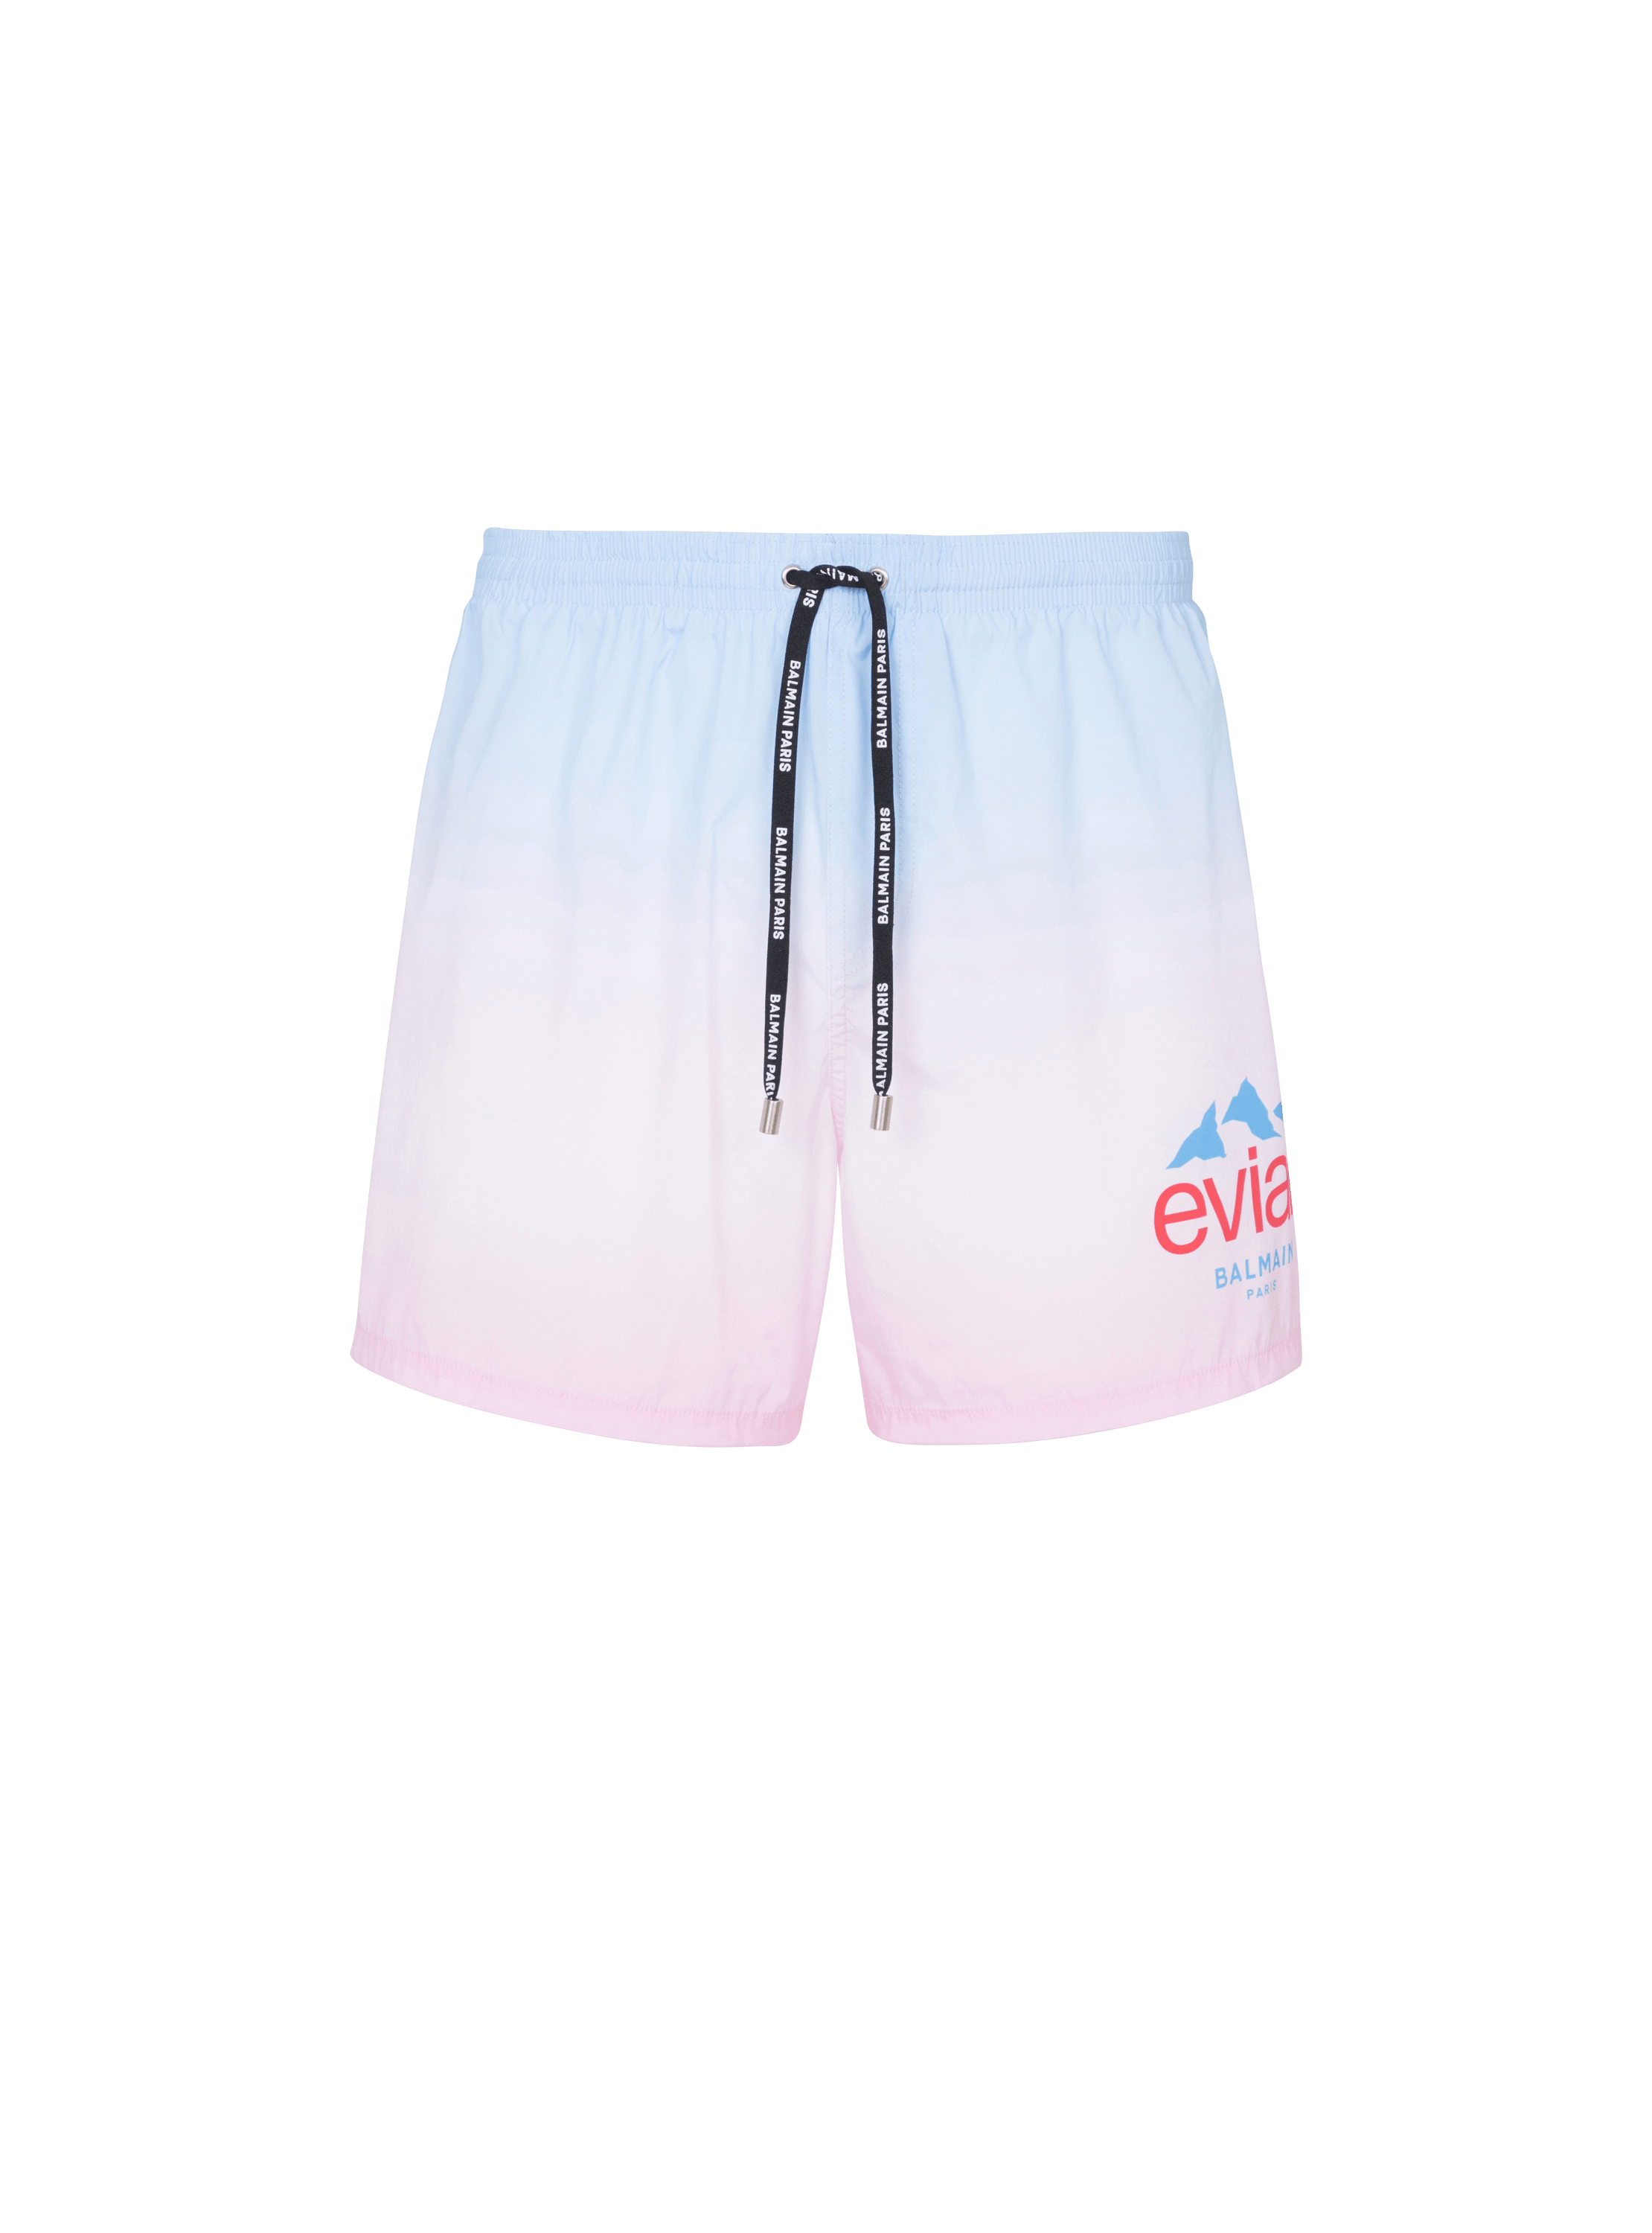 Balmain x Evian - Gradient swim shorts, multicolor, hi-res